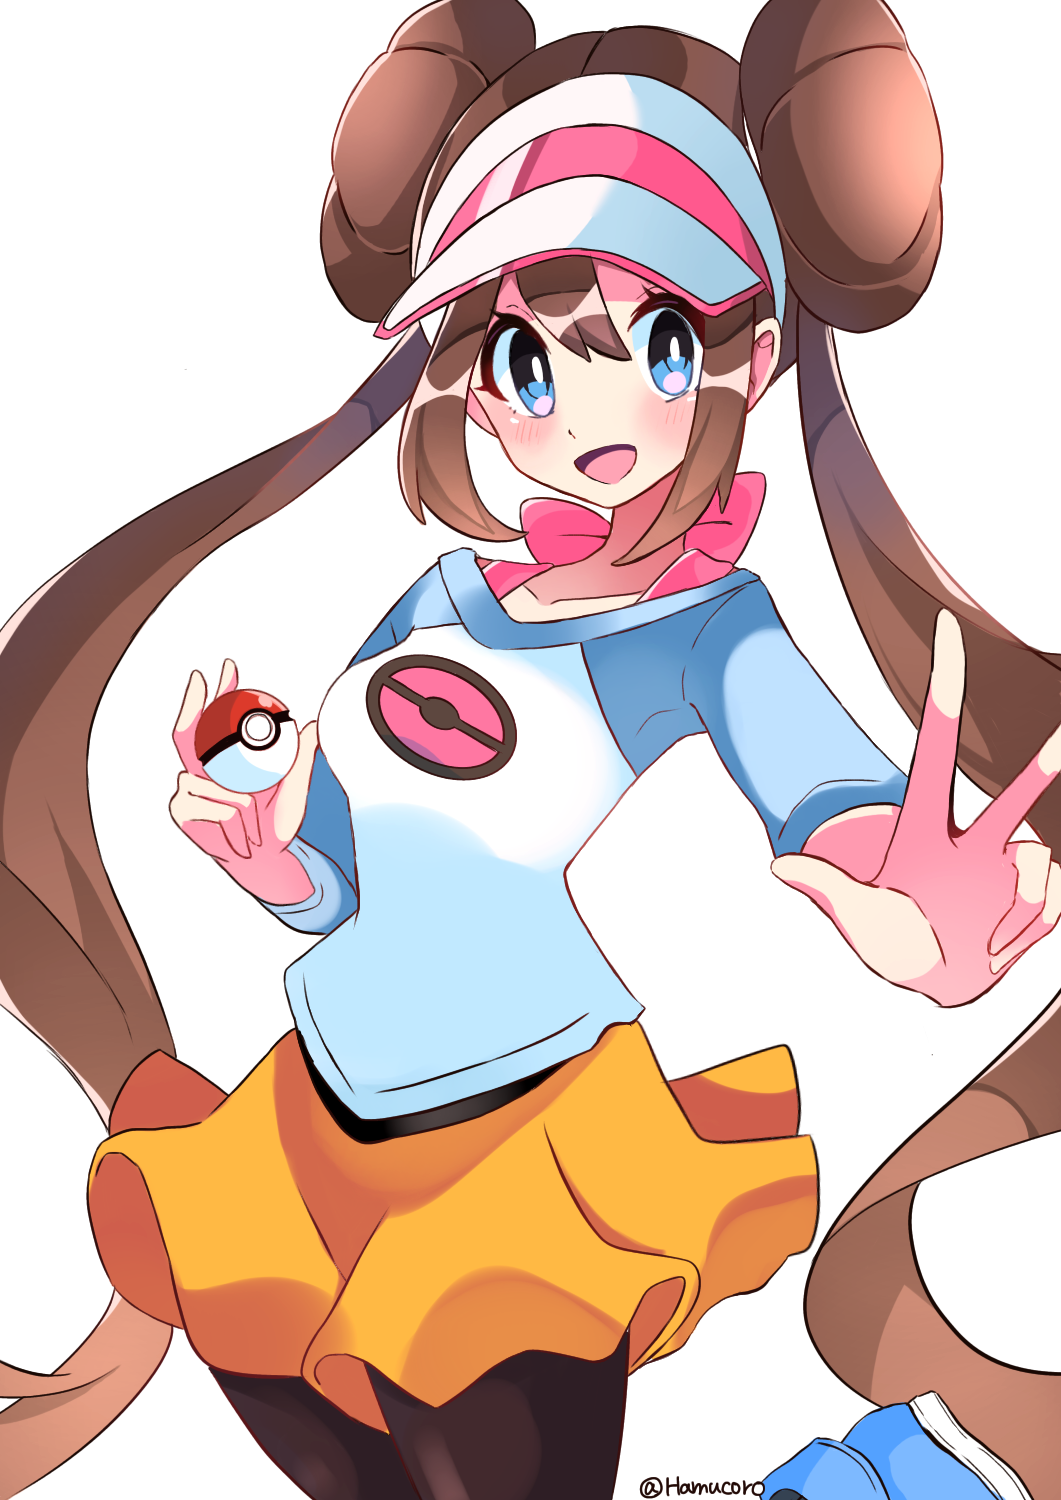 Anime 1061x1500 anime anime girls Pokémon Rosa (Pokémon) long hair twintails brunette solo artwork digital art fan art hat Poke Ball skirt